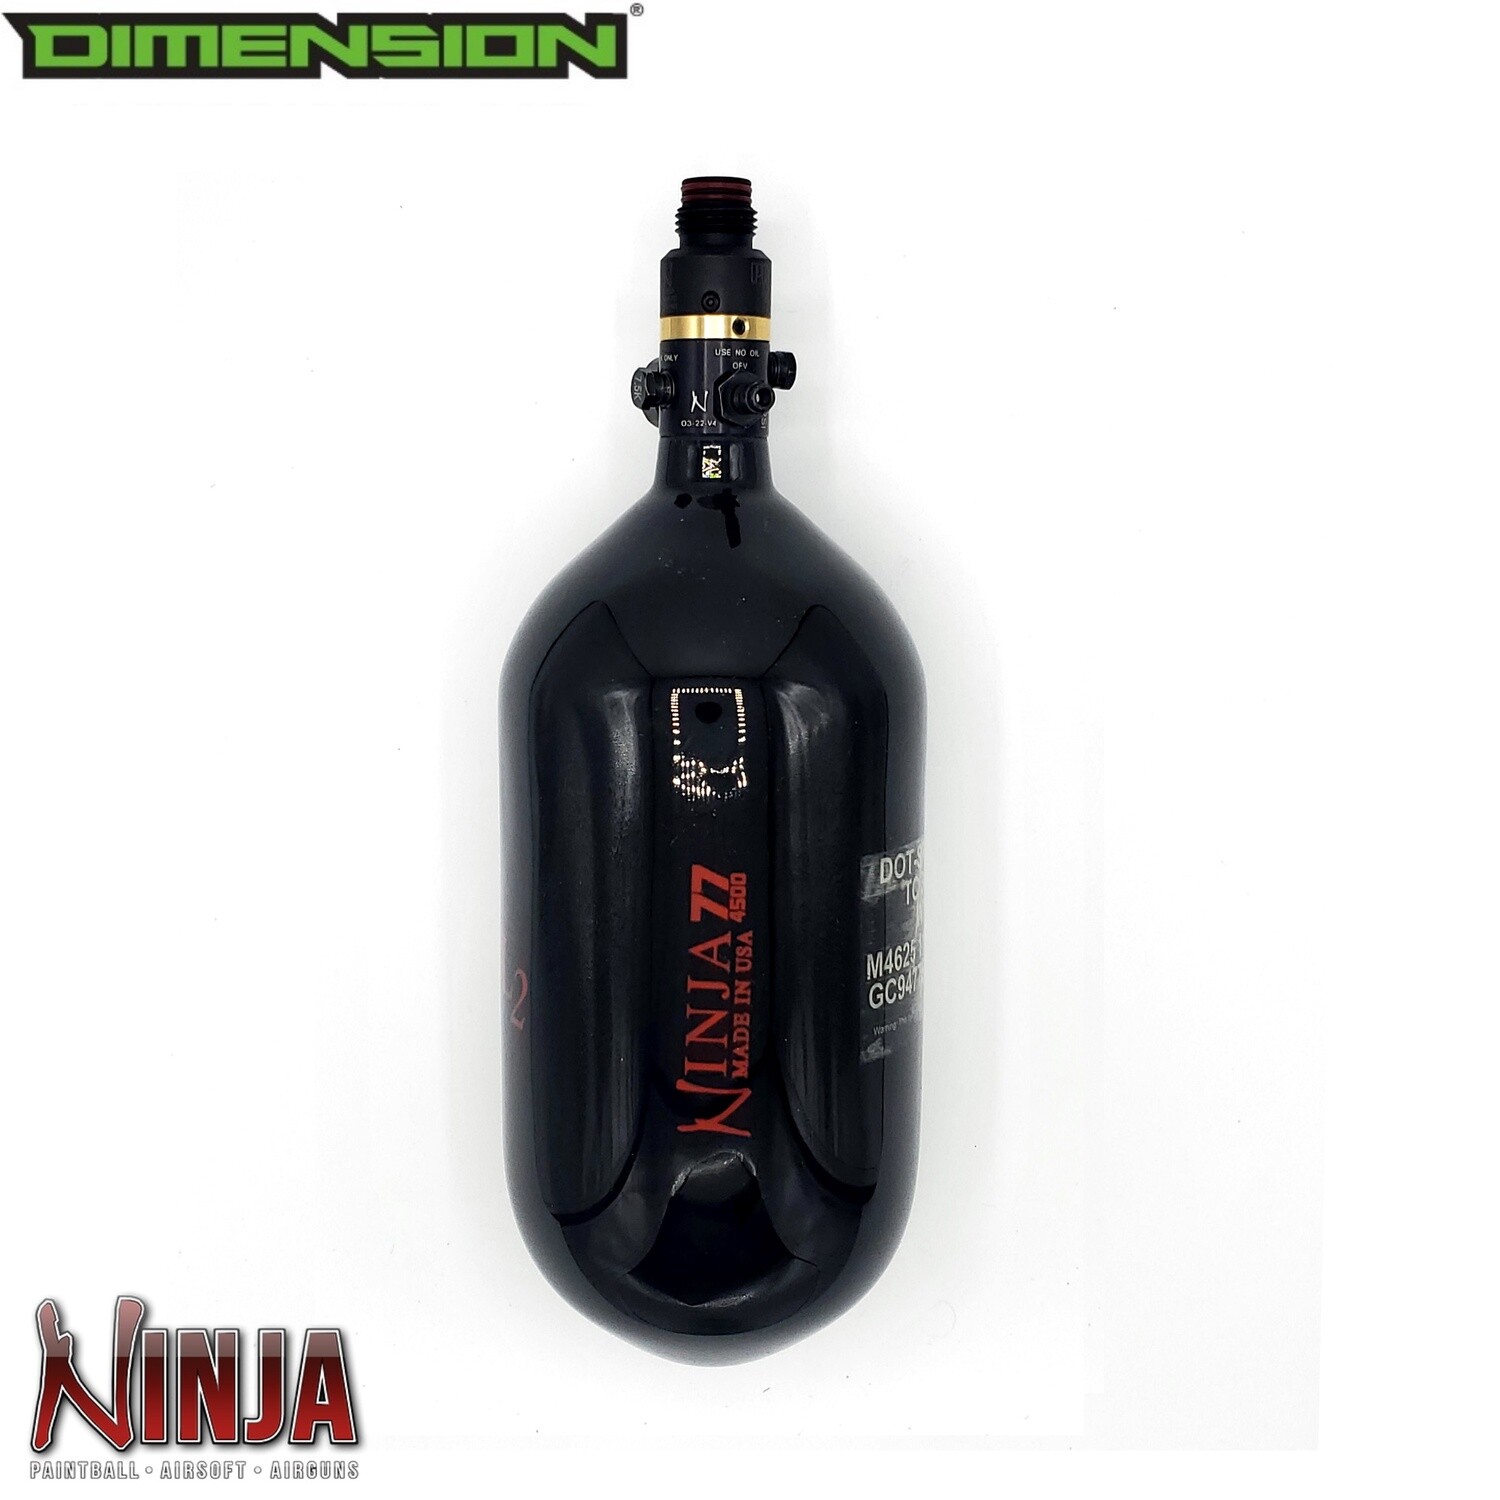 Ninja Compressed Air Tank - 77cu 4500 psi PRO V2 regulator SL Carbon Fiber - Black with Red Logo